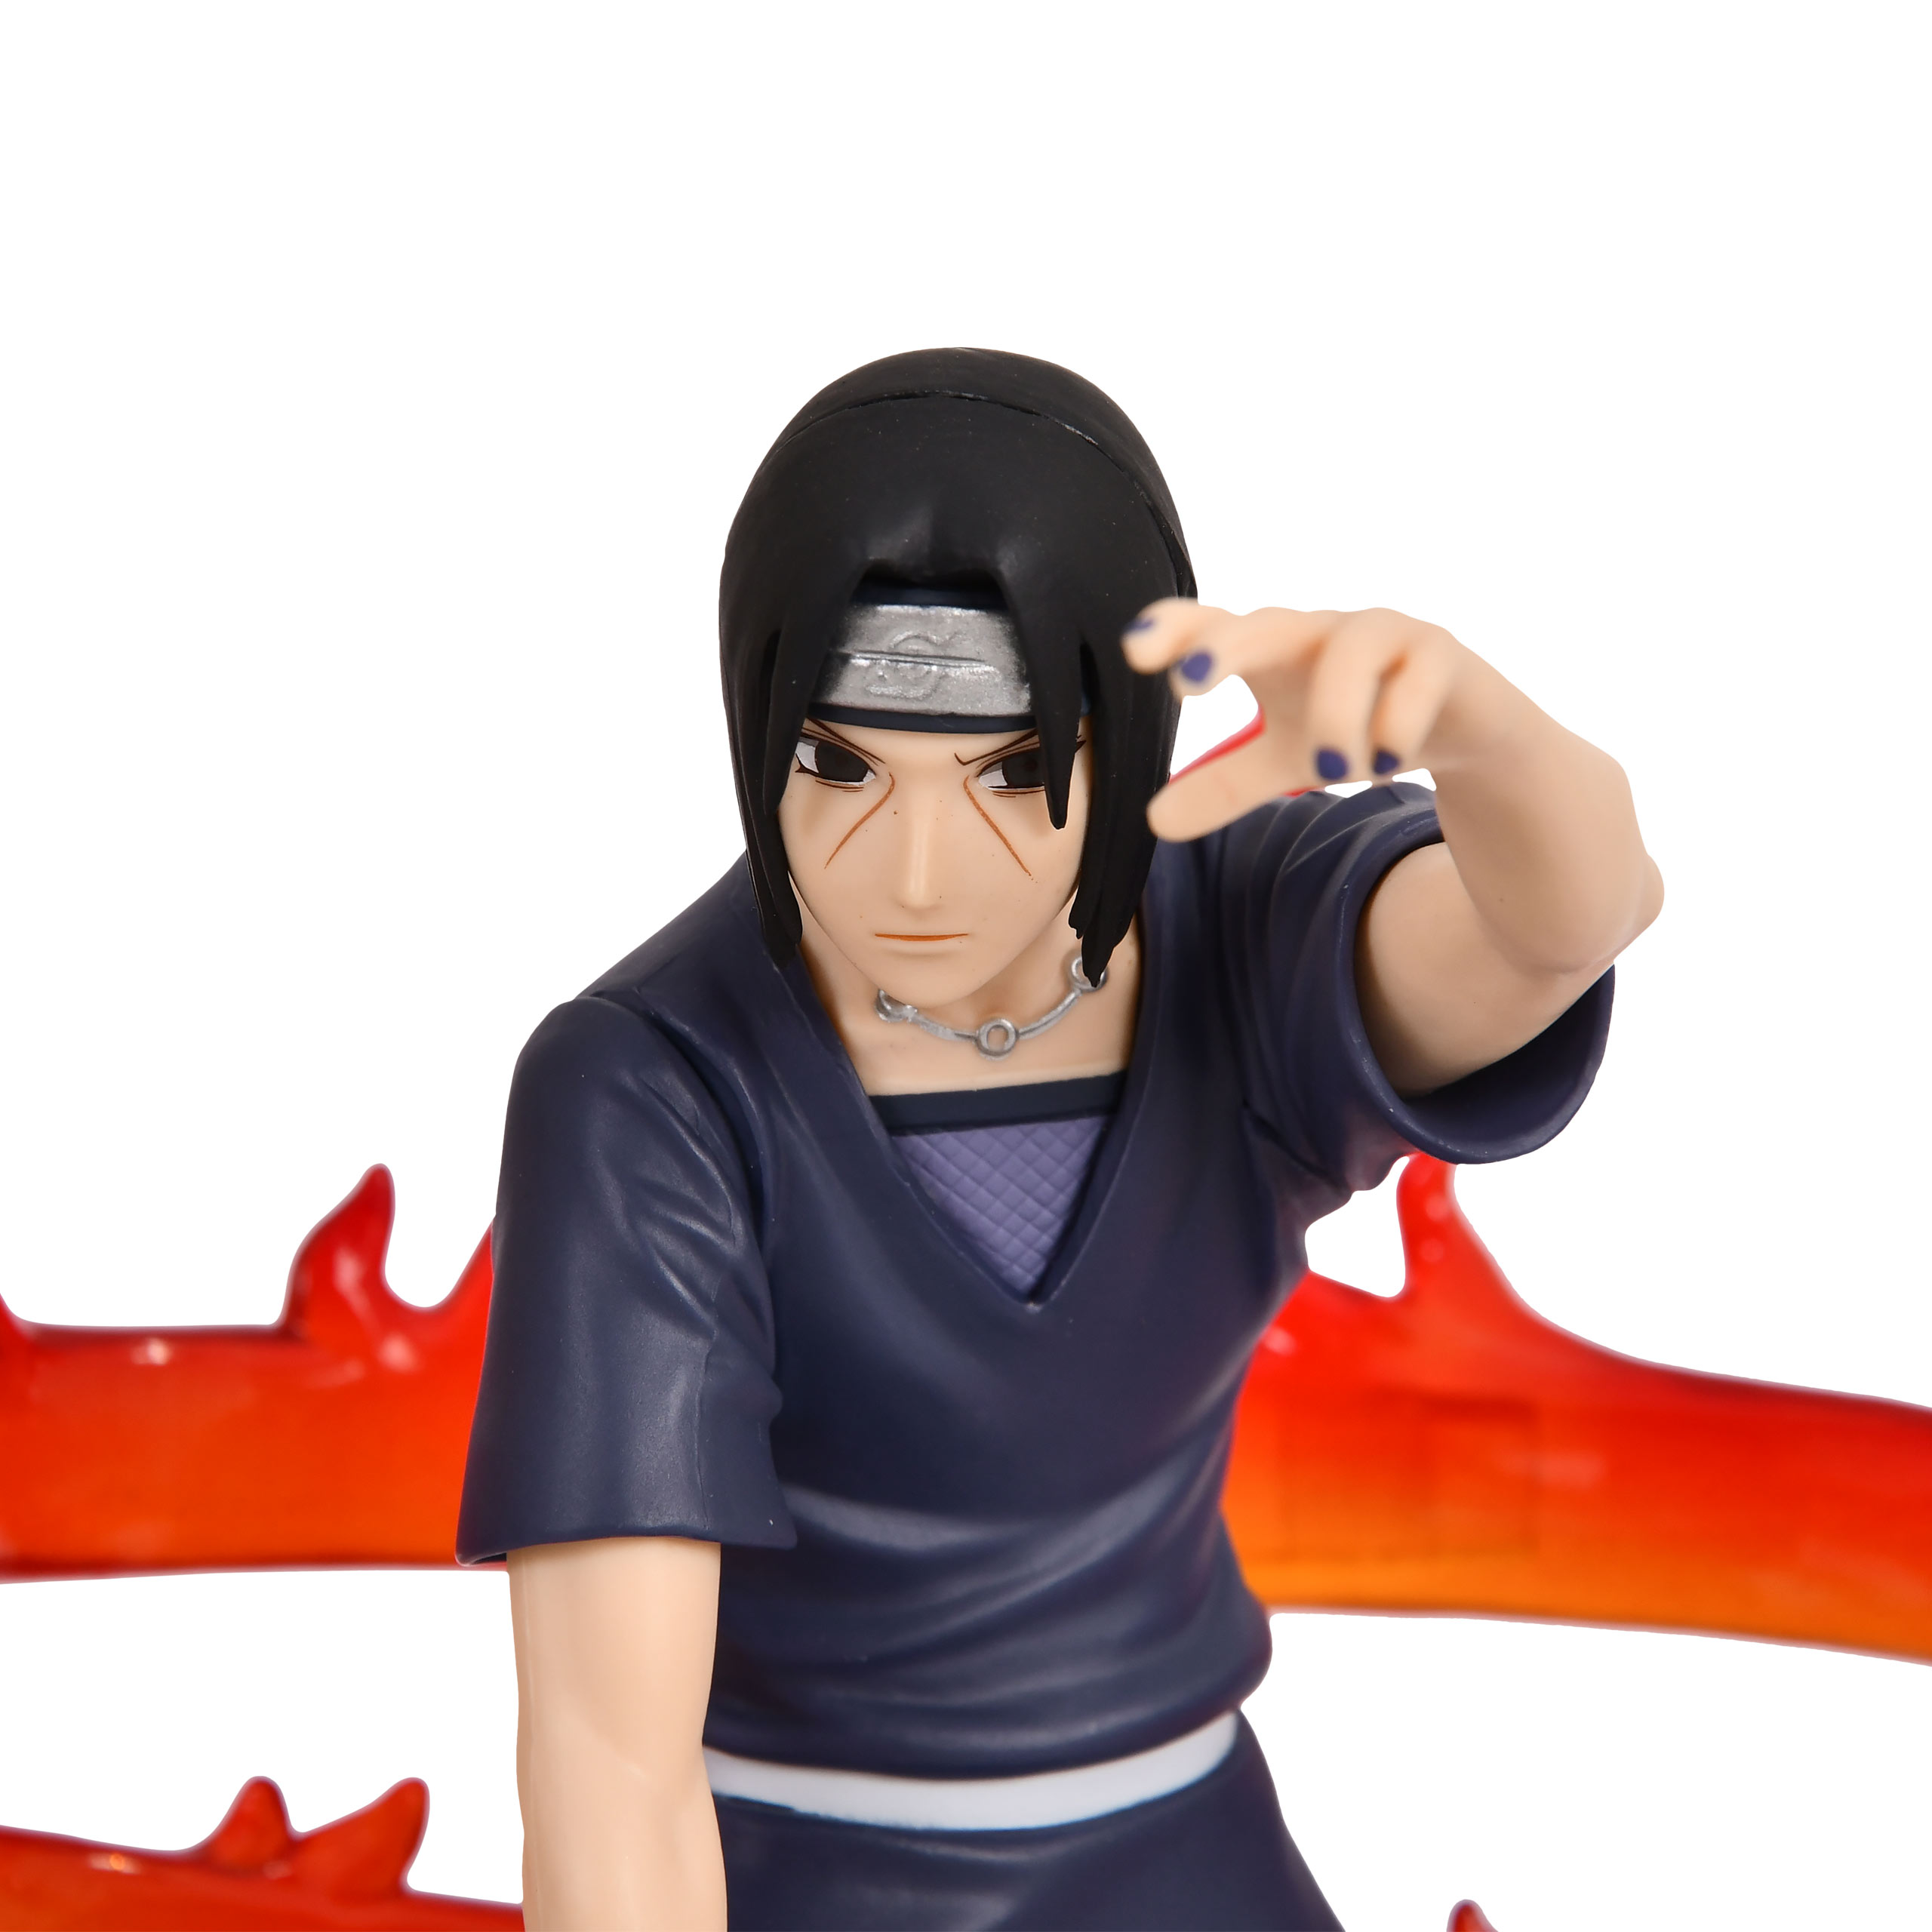 Naruto Shippuden - Figurine Uchiha Itachi Effectreme